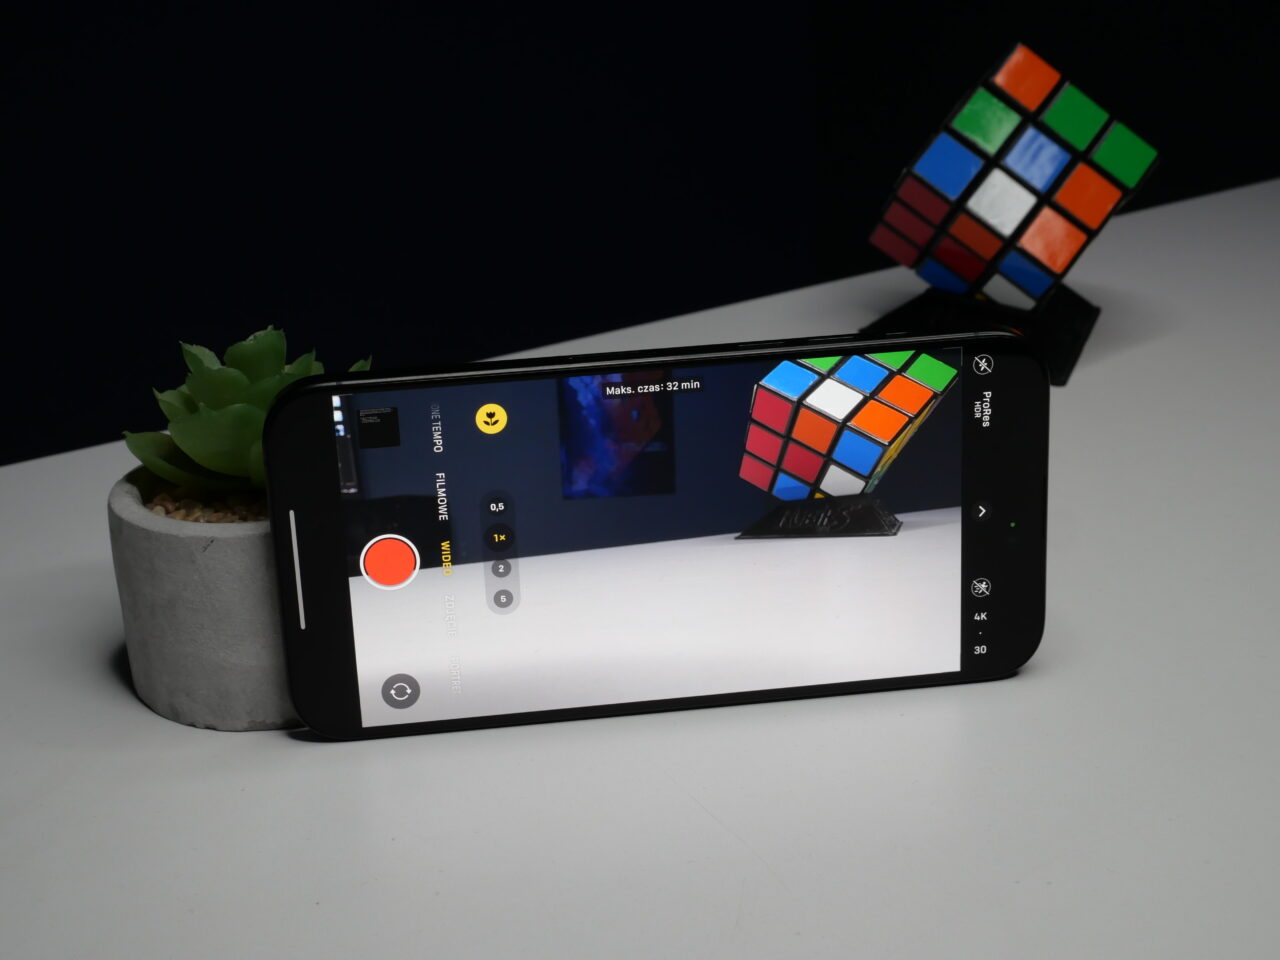 Smartfon leżący na białym stole z włączoną aplikacją kamery wyświetlającą obraz kostki Rubika, obok doniczka z sukulentem.